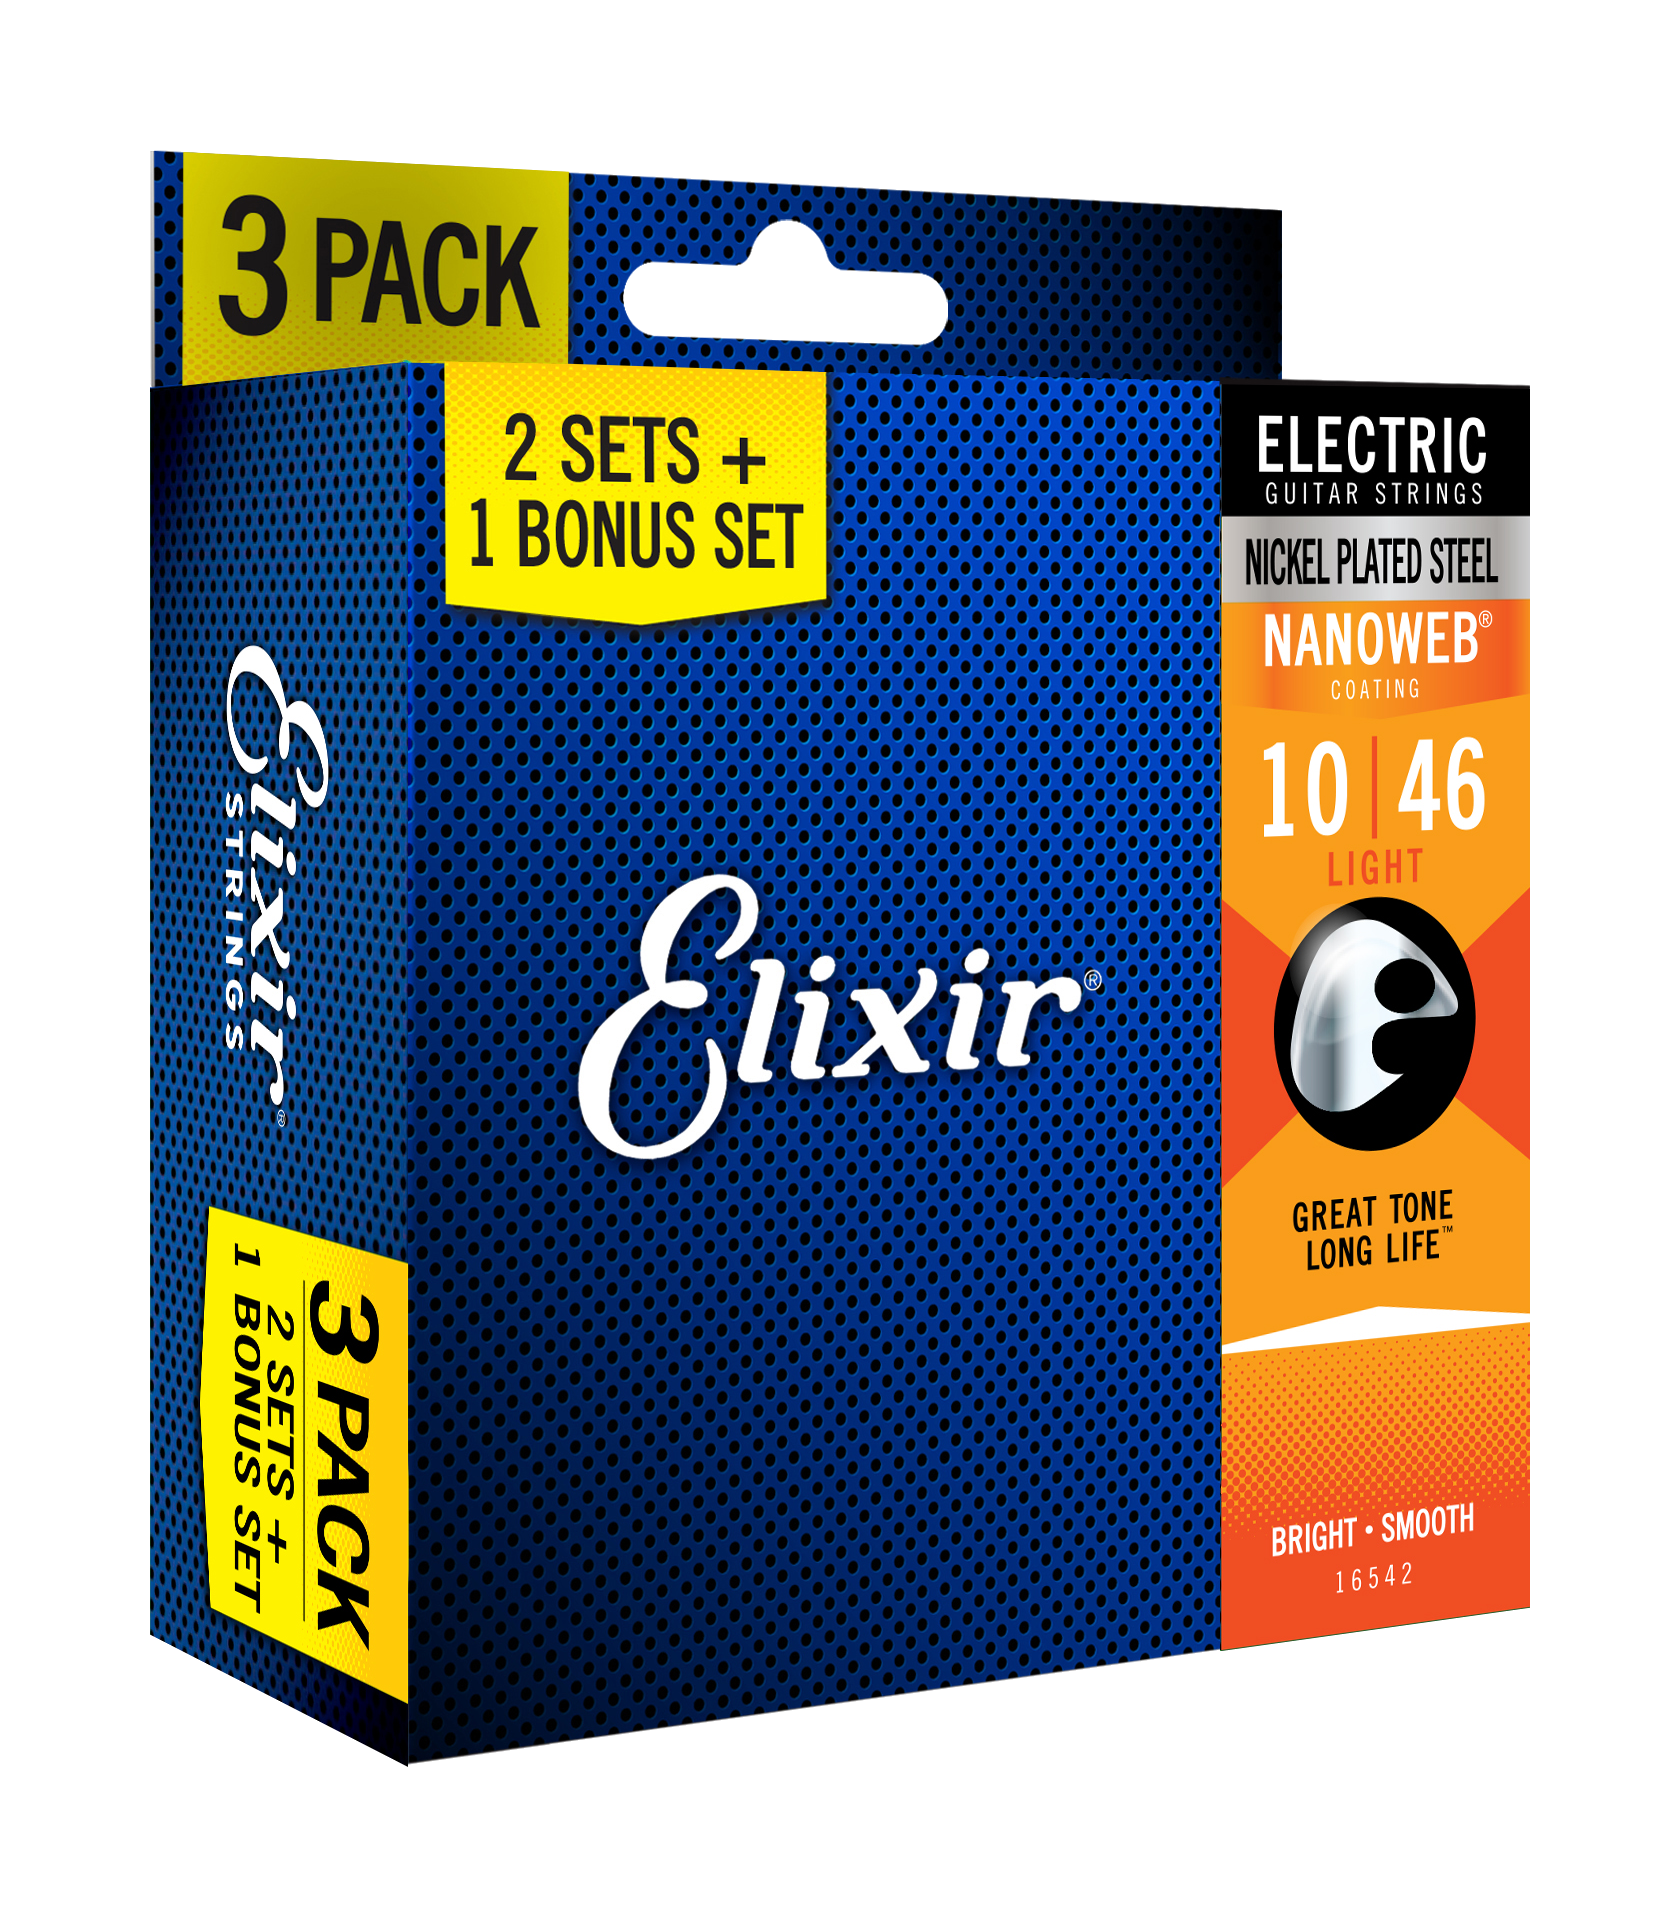 Elixir 3x2 Pack 16542 Electric Nickel